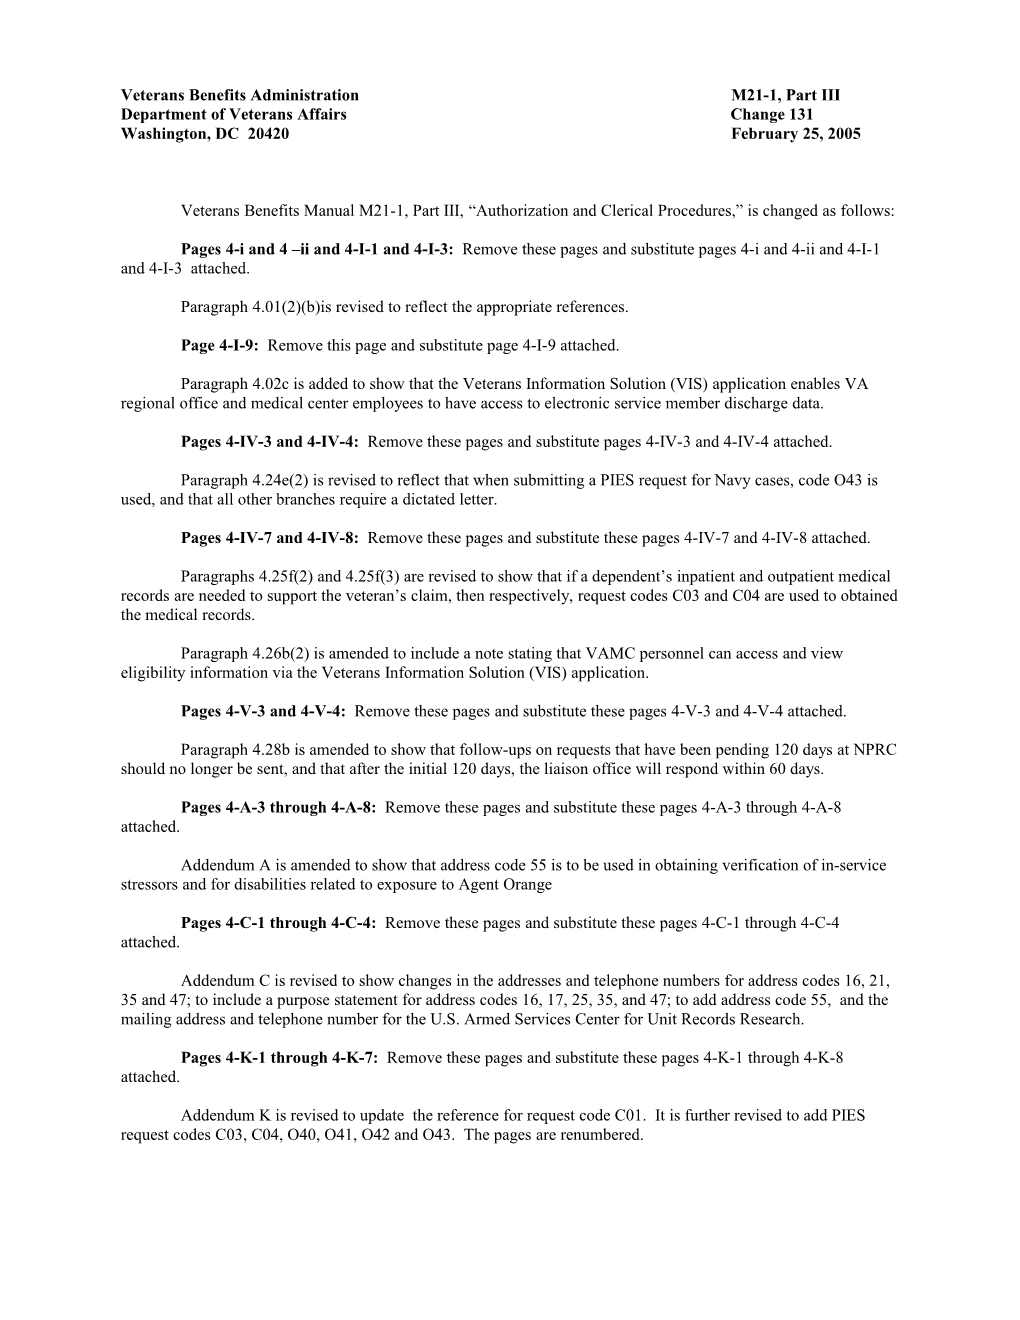 M21-1, Part 3, Change Document 131